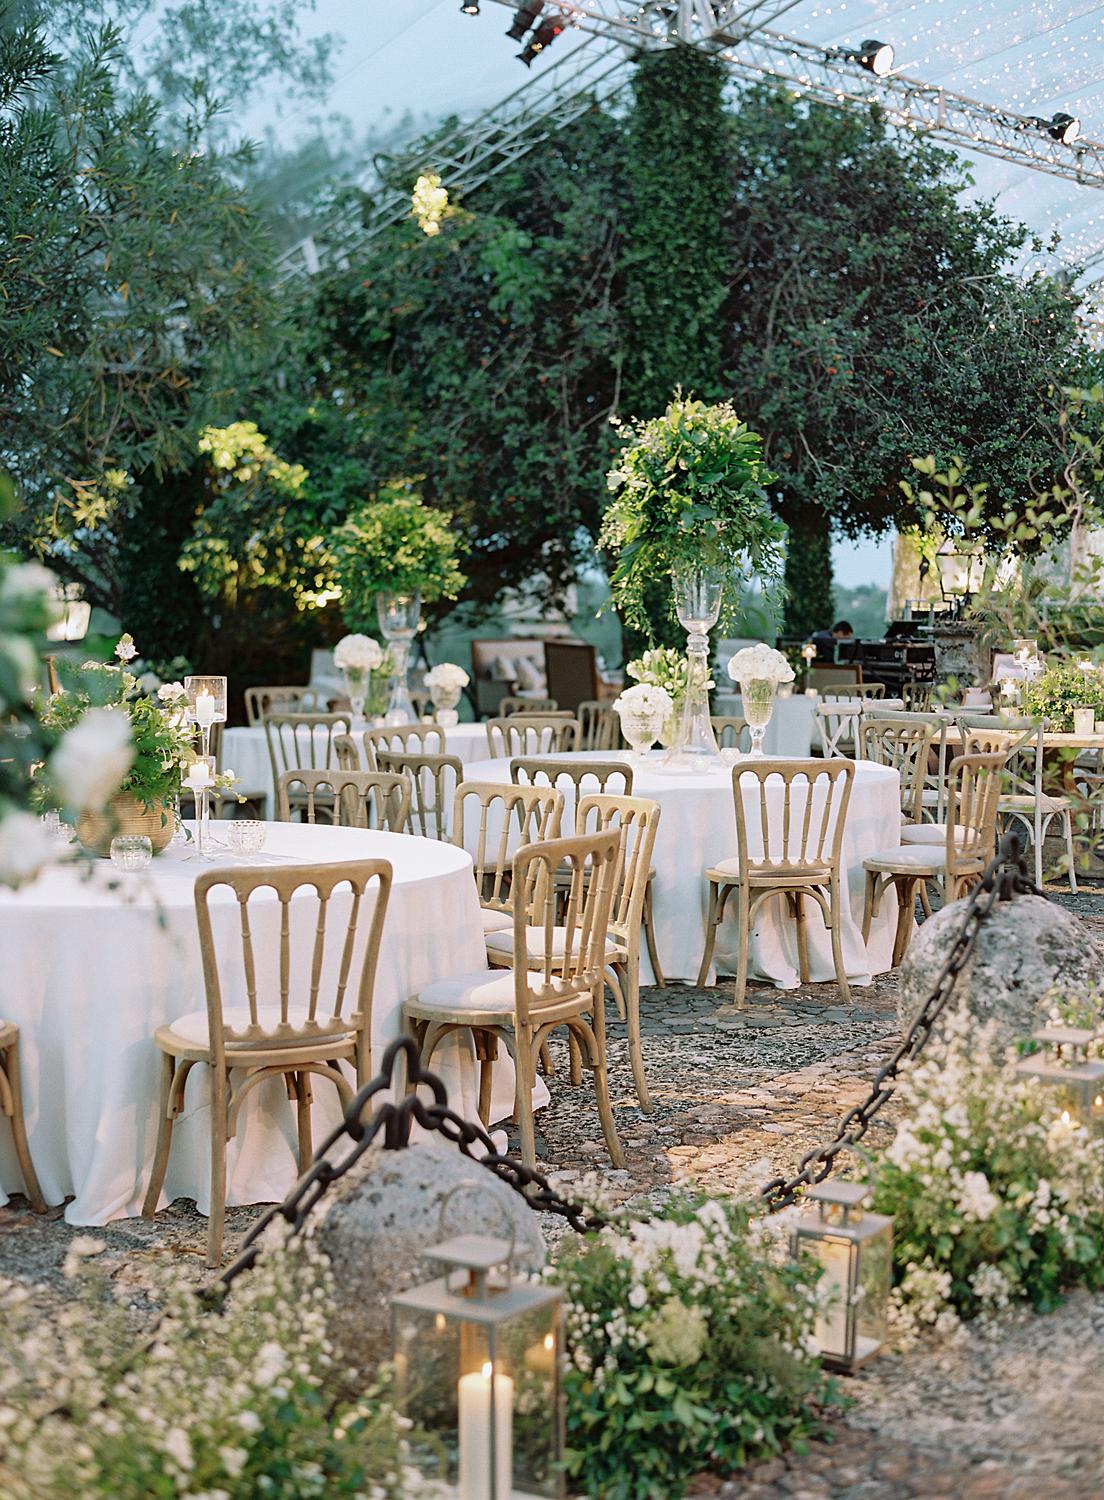 Reception tables at Altos de Chavón wedding.